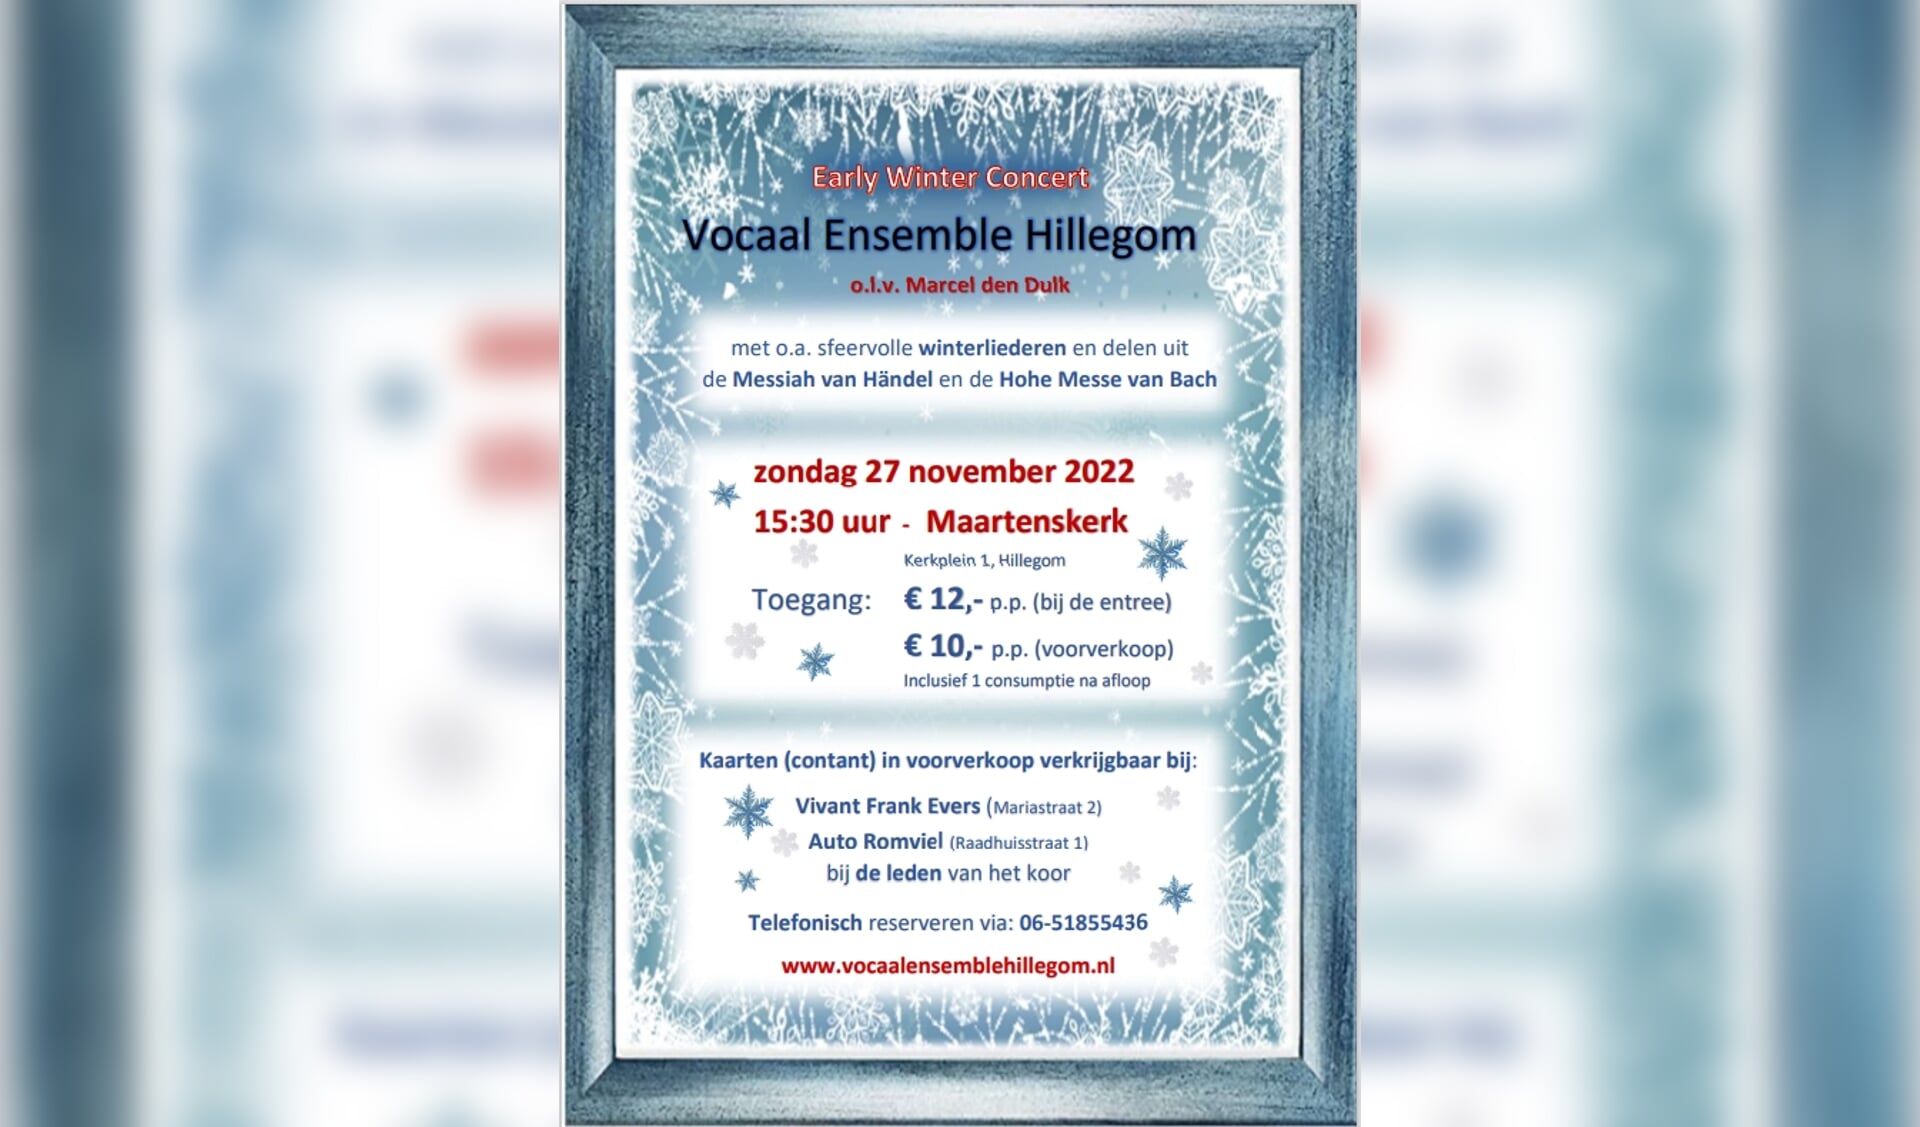 Early Winter Concert op 27 november Hillegom